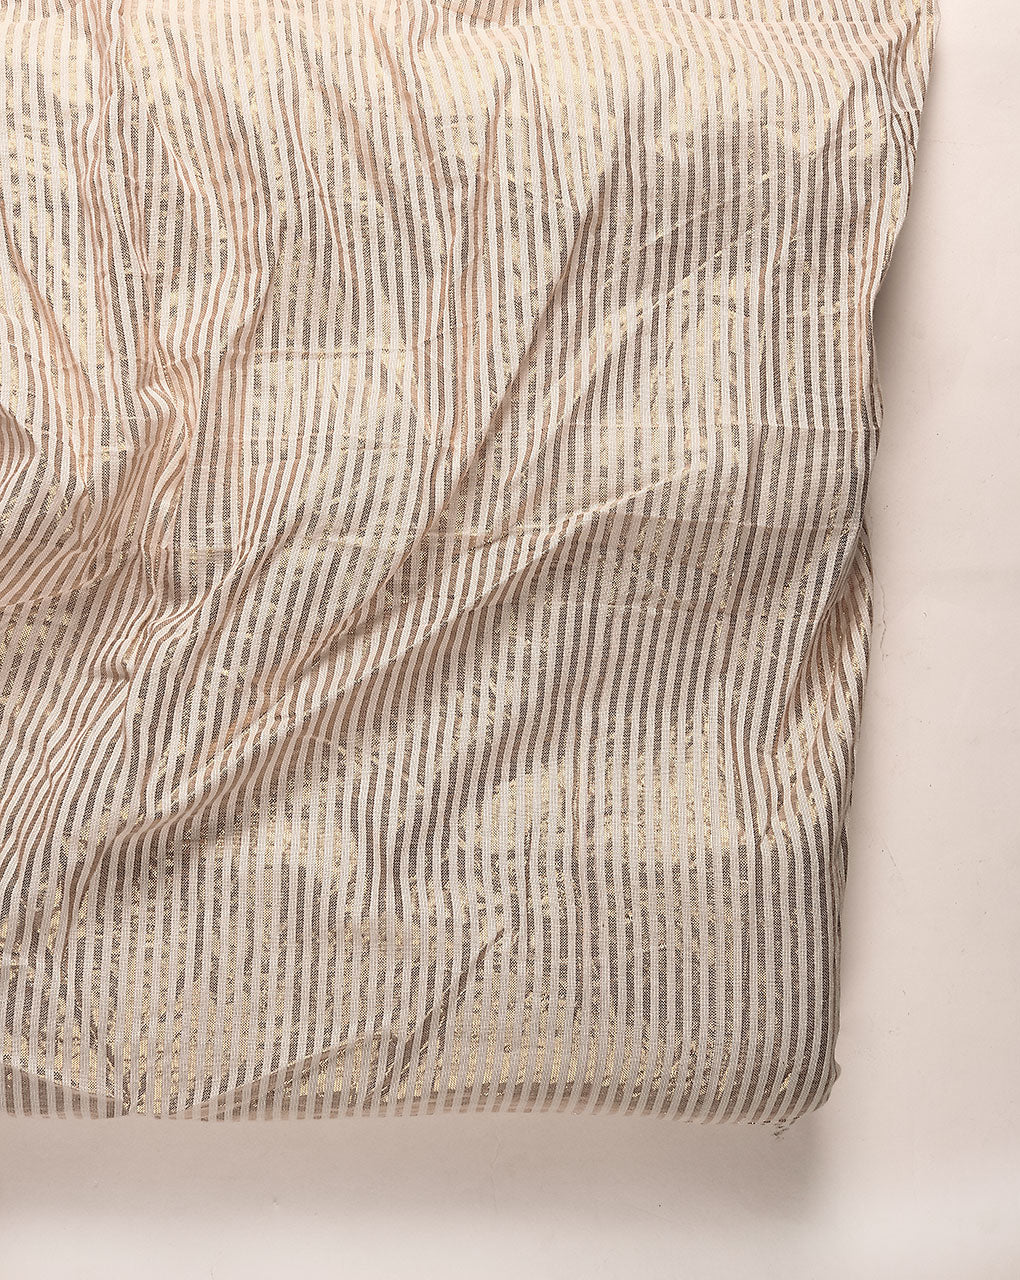 Greige (64 x 56) Lurex Cotton Fabric